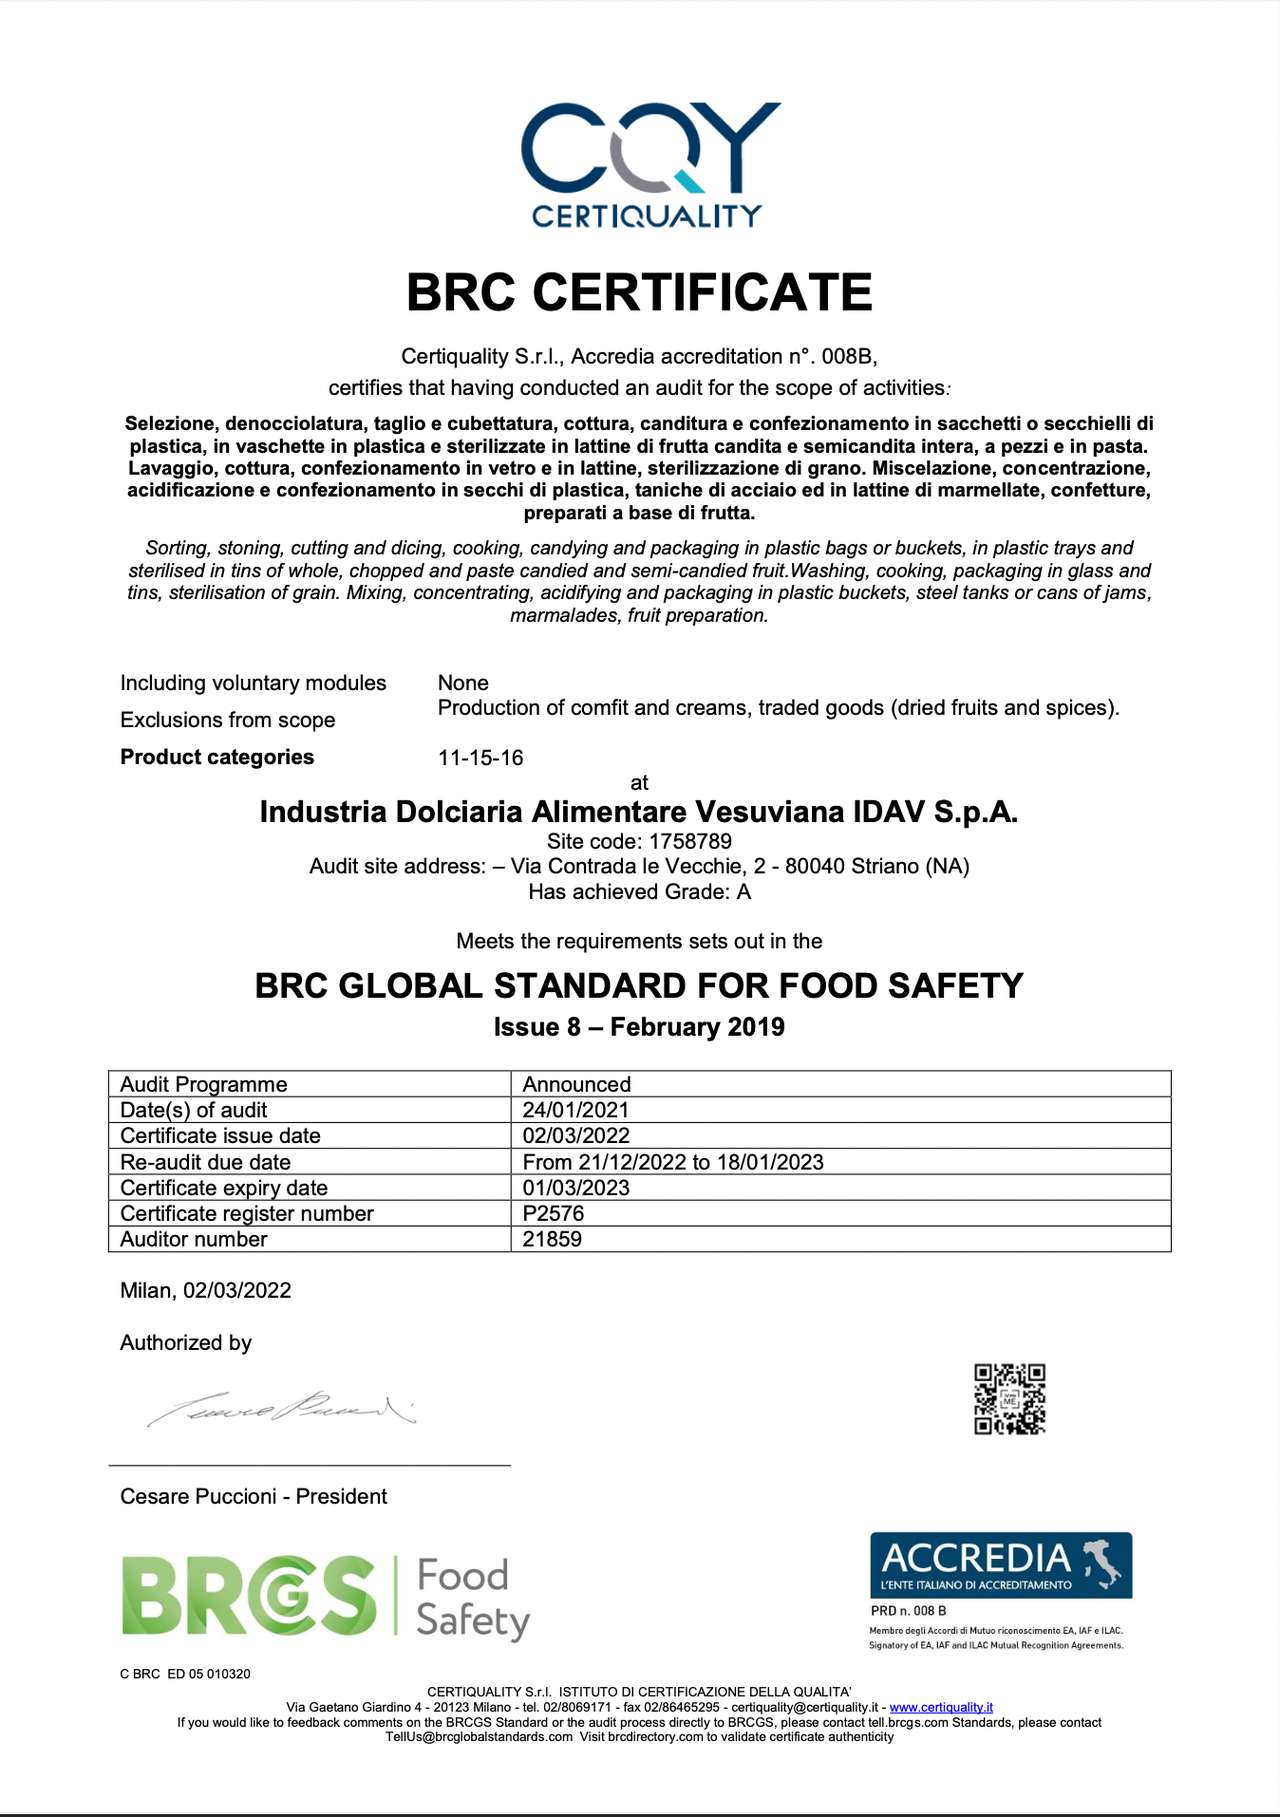 Certificazioni Ambrosio IDAV SpA